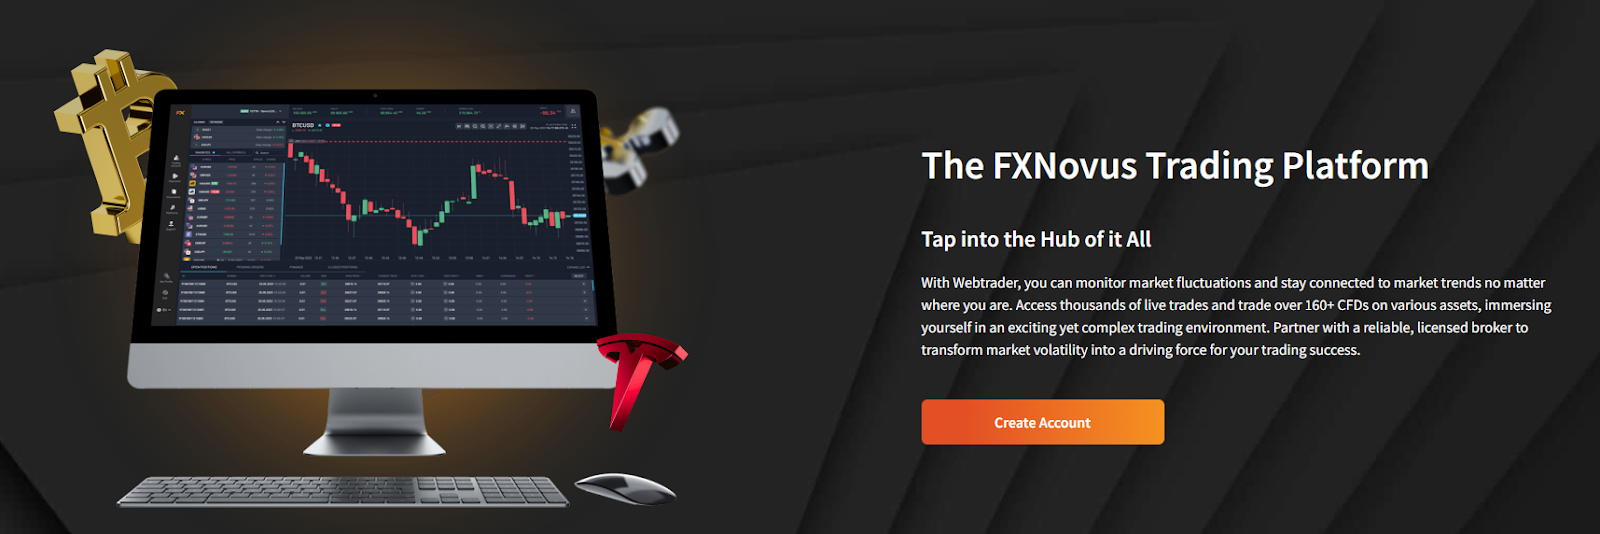 La plataforma WebTrader de FXNovus ofrece datos de mercado en tiempo real y gráficos personalizables